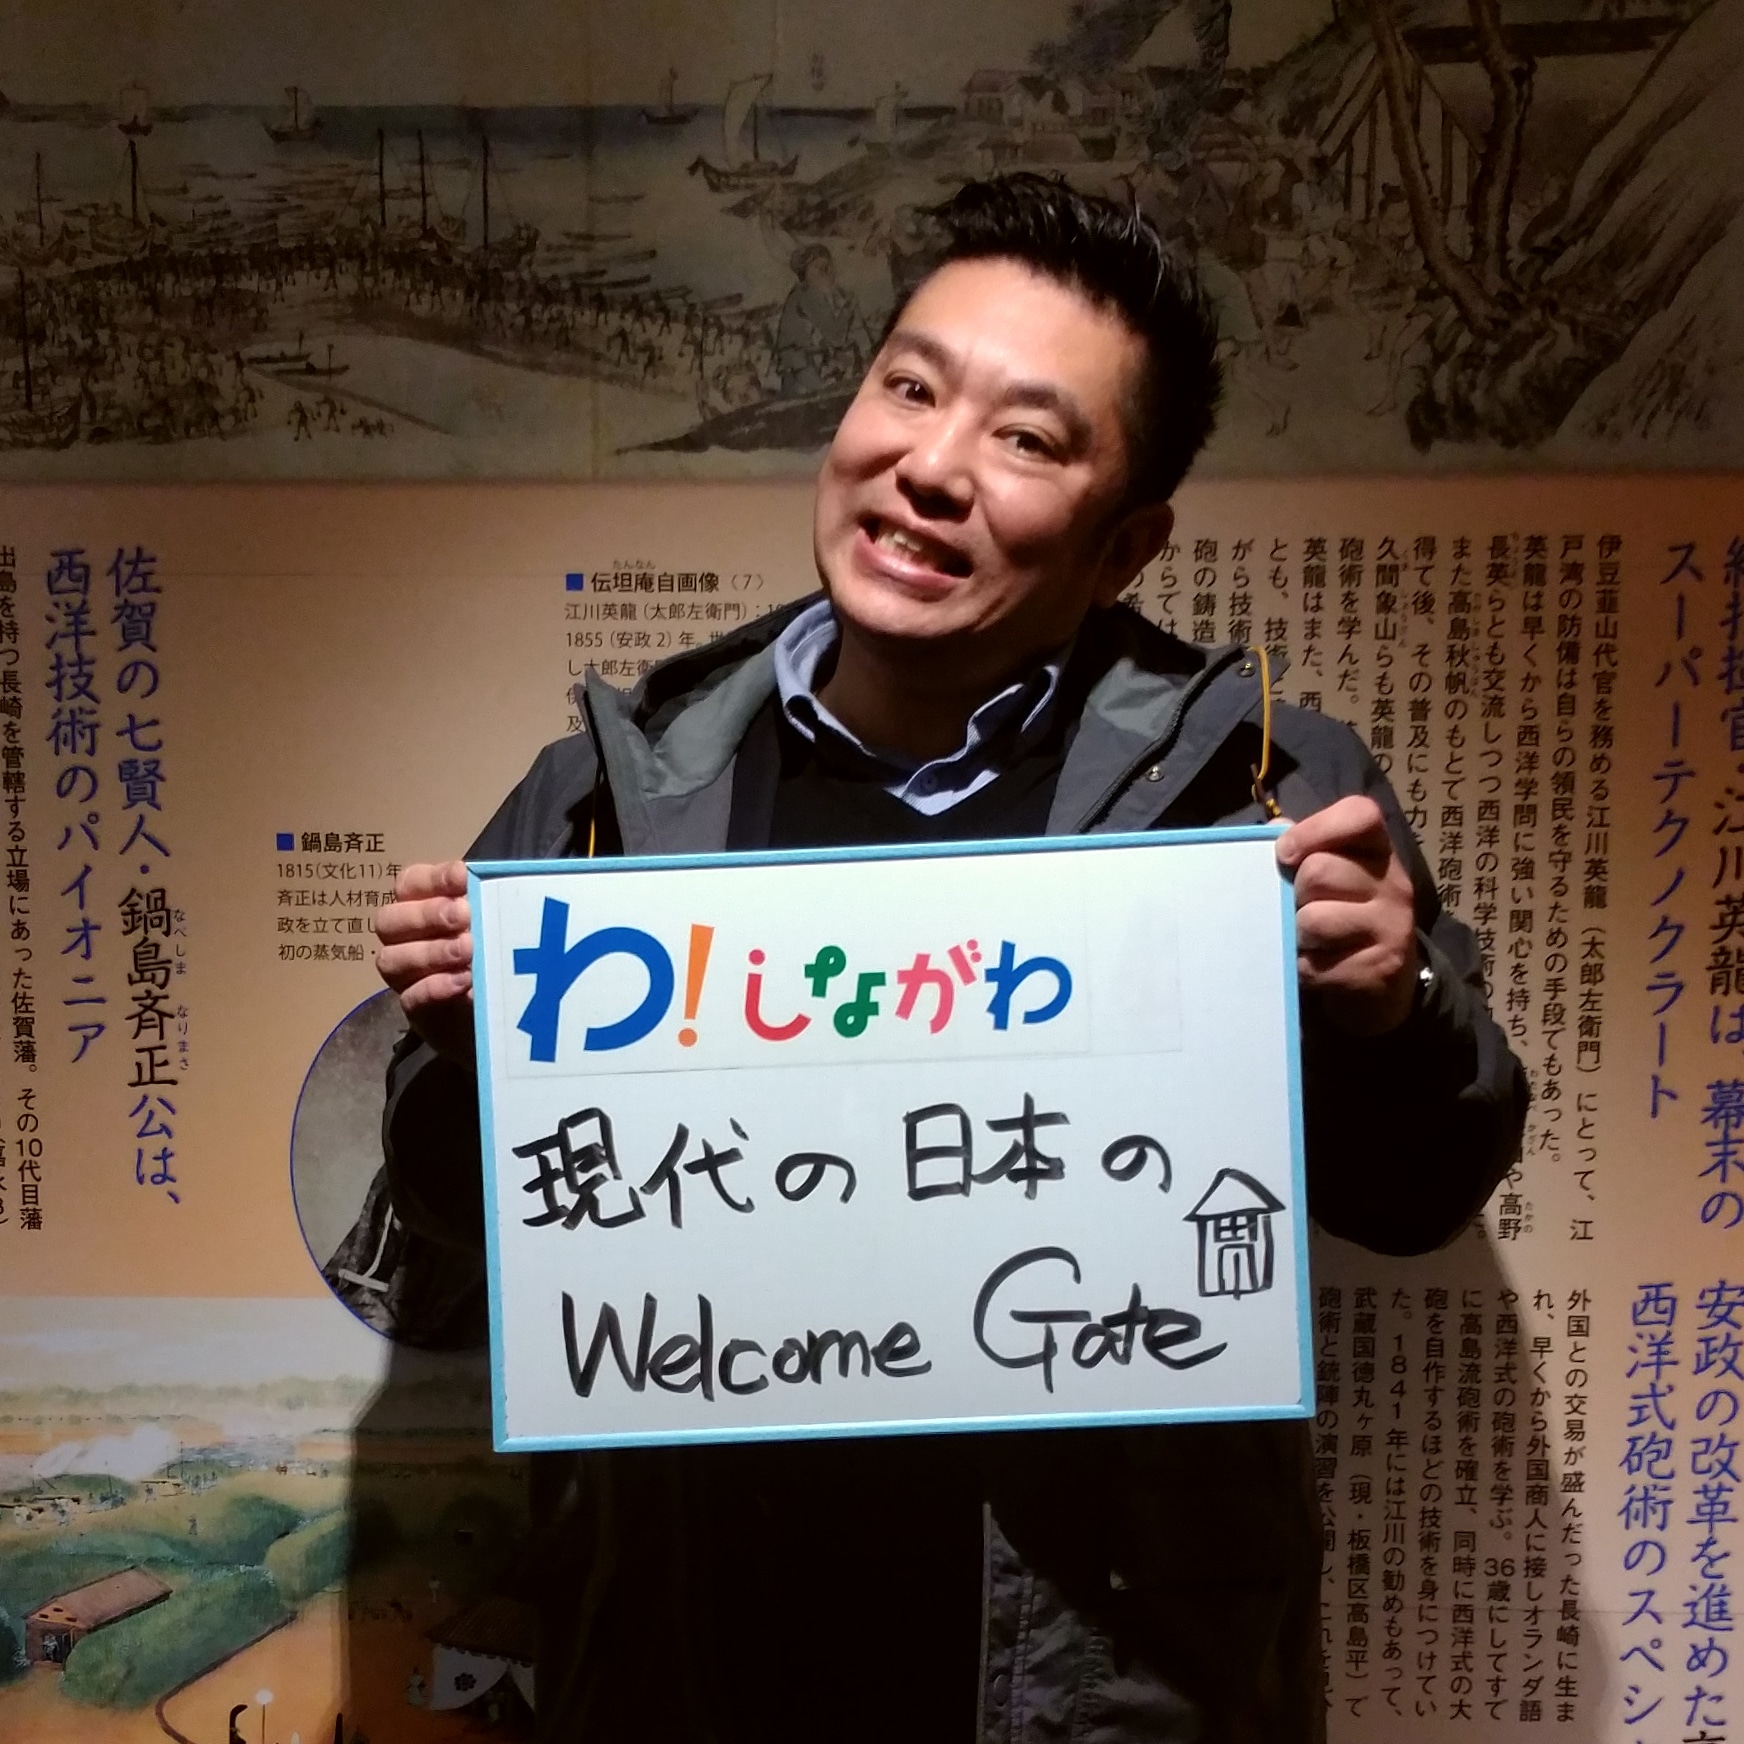 渡邊さんのメッセージ「現代の日本のWelcome Gate」